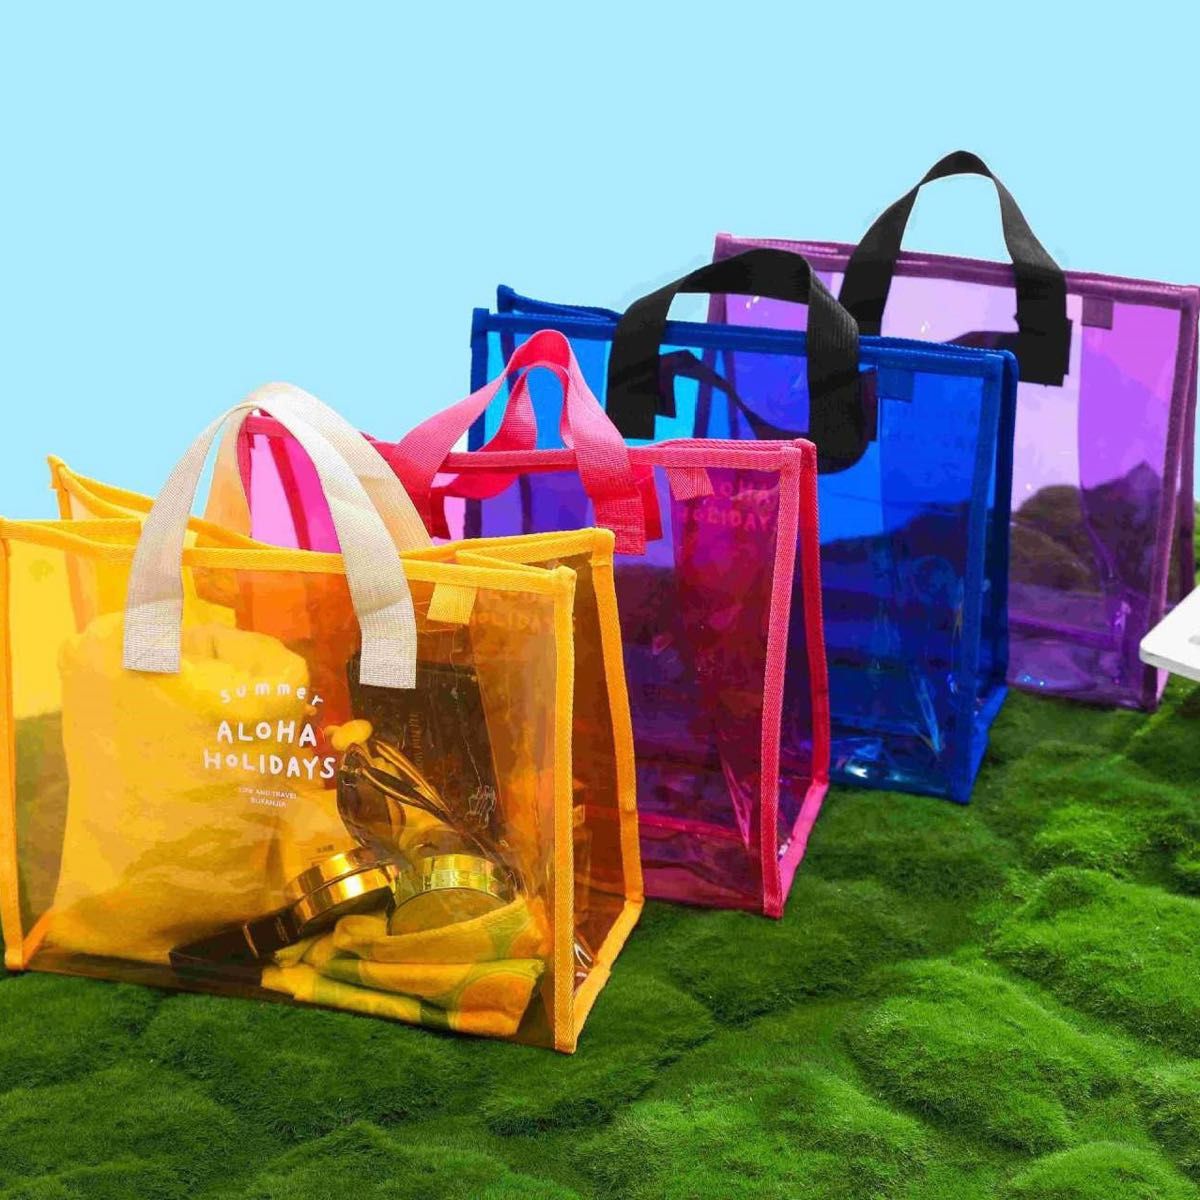 ビニールバッグ 透明 色付き 大容量 パープル プールバッグ トートバッグ 可愛い プール 海 夏 クリア カラフル オシャレ